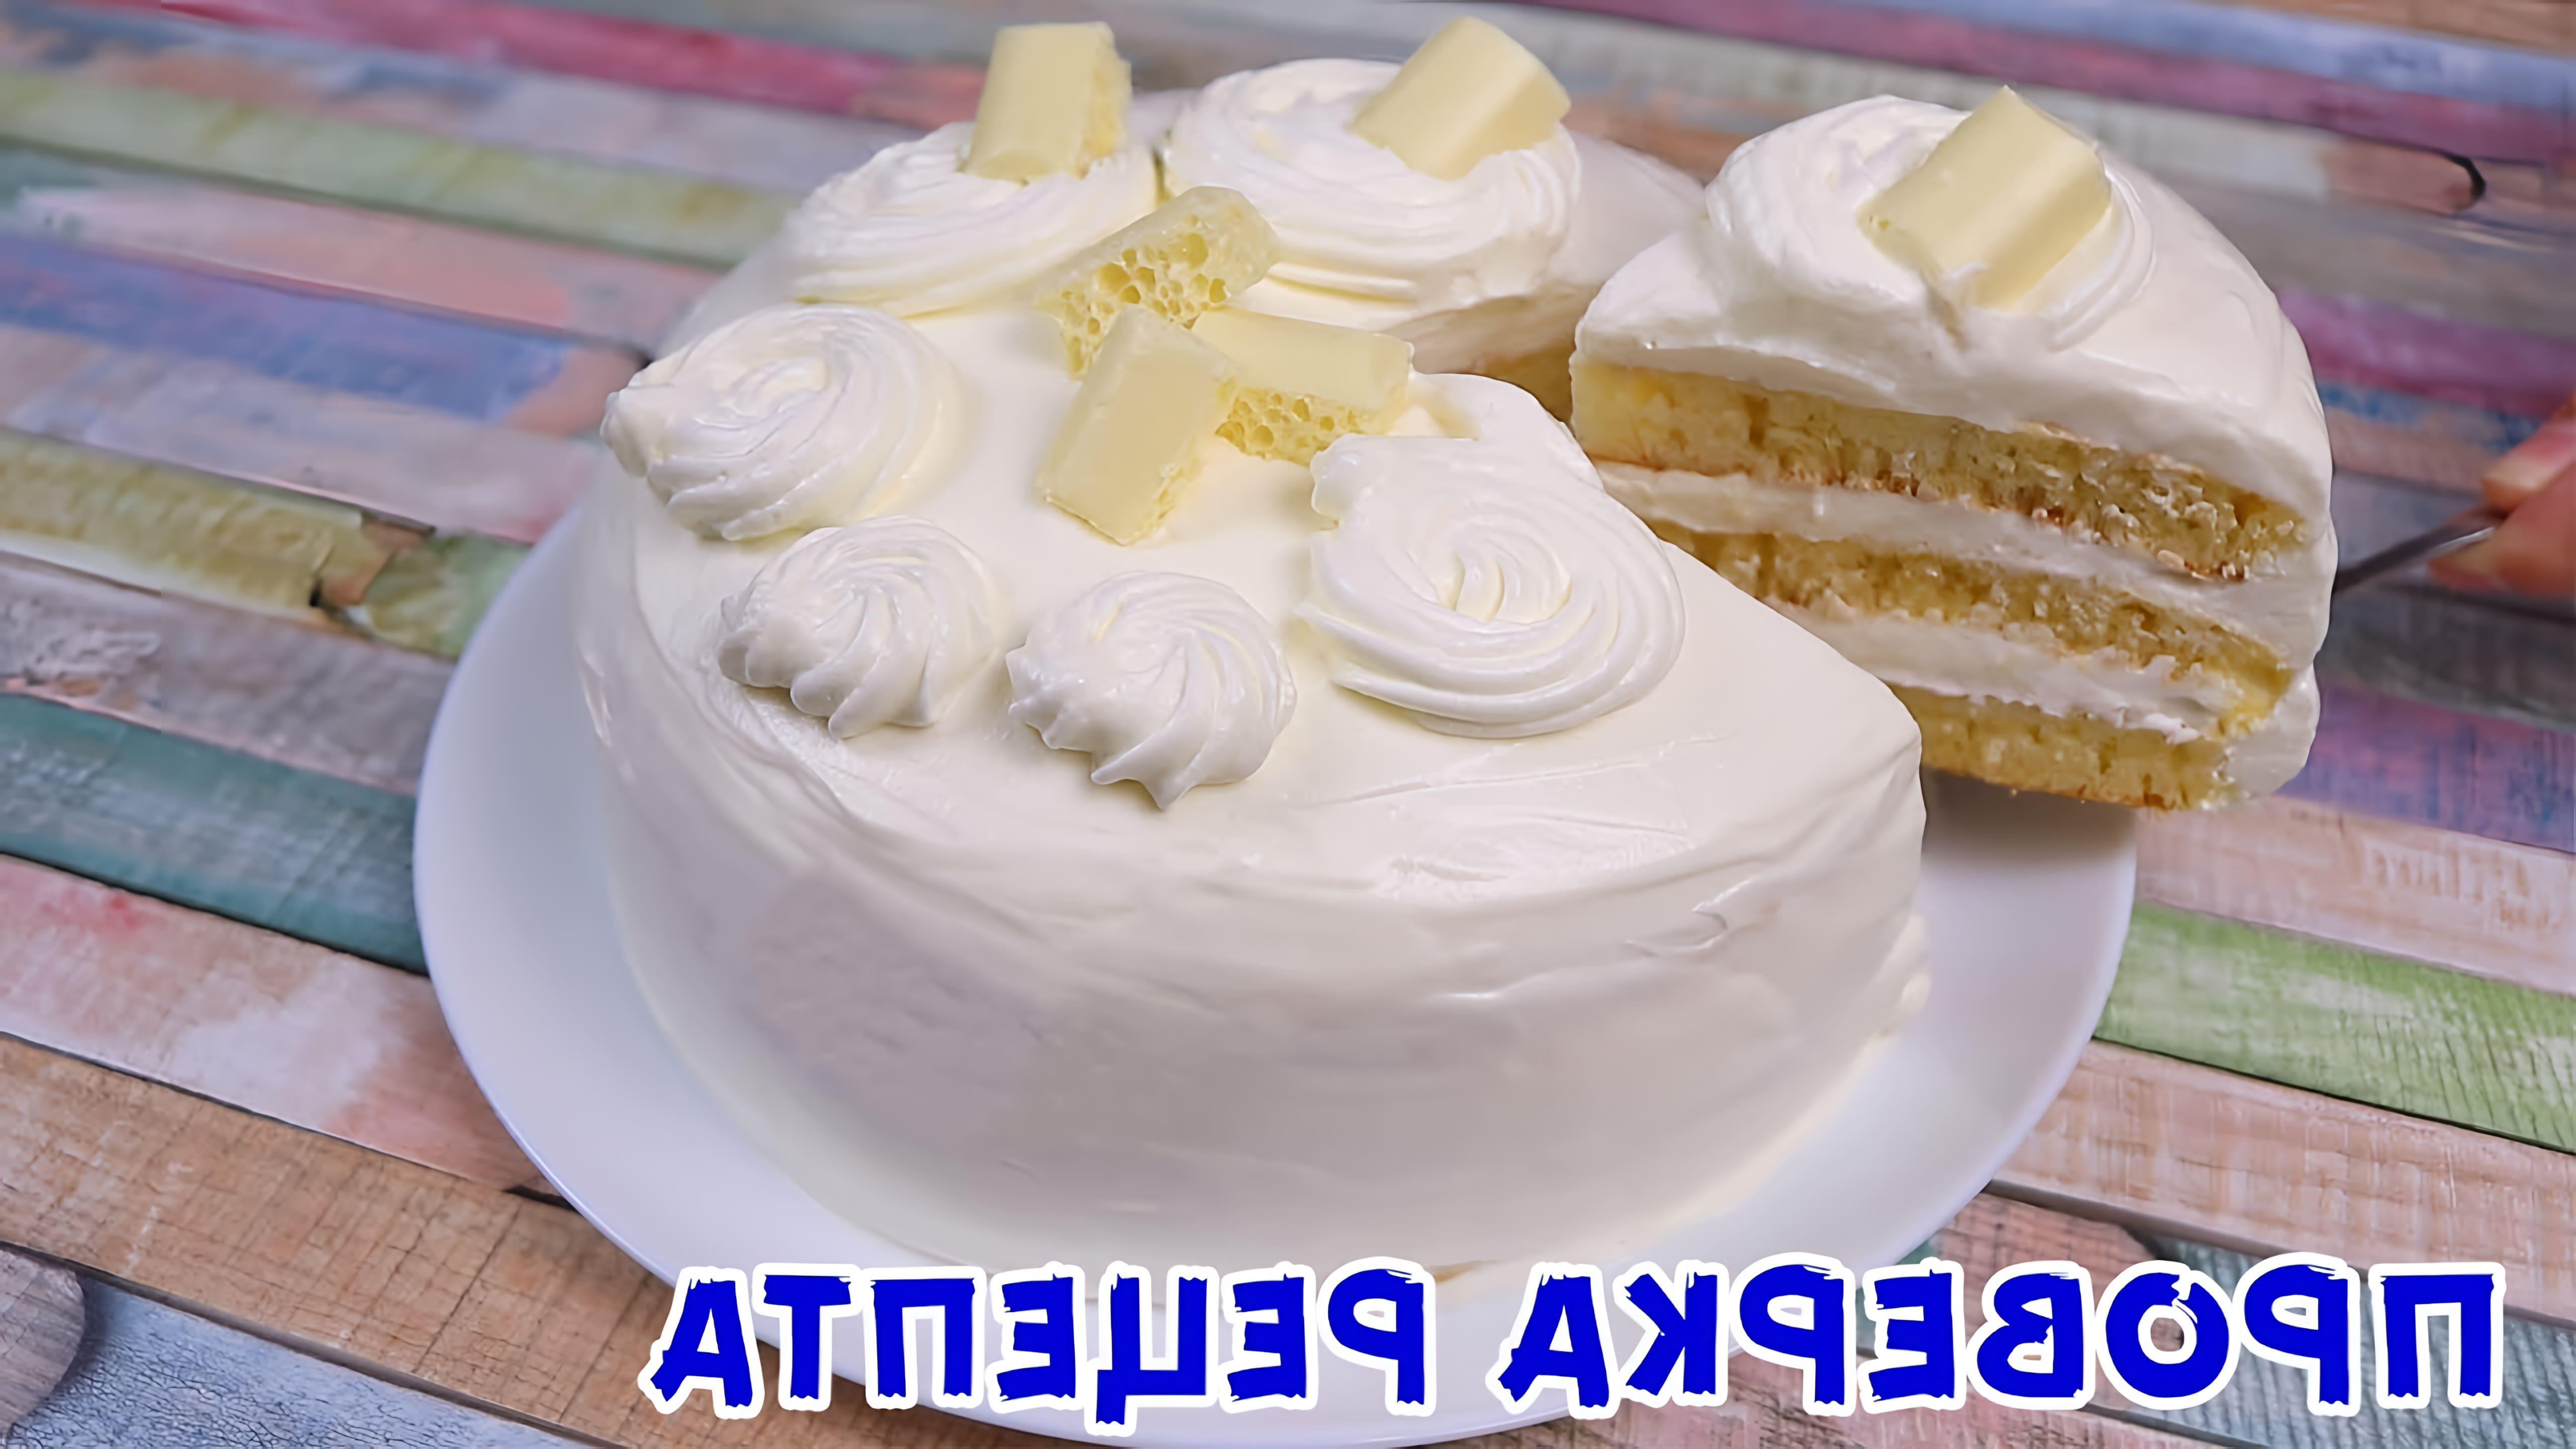 В этом видео демонстрируется рецепт приготовления нежного бисквитного торта без использования духовки и миксера